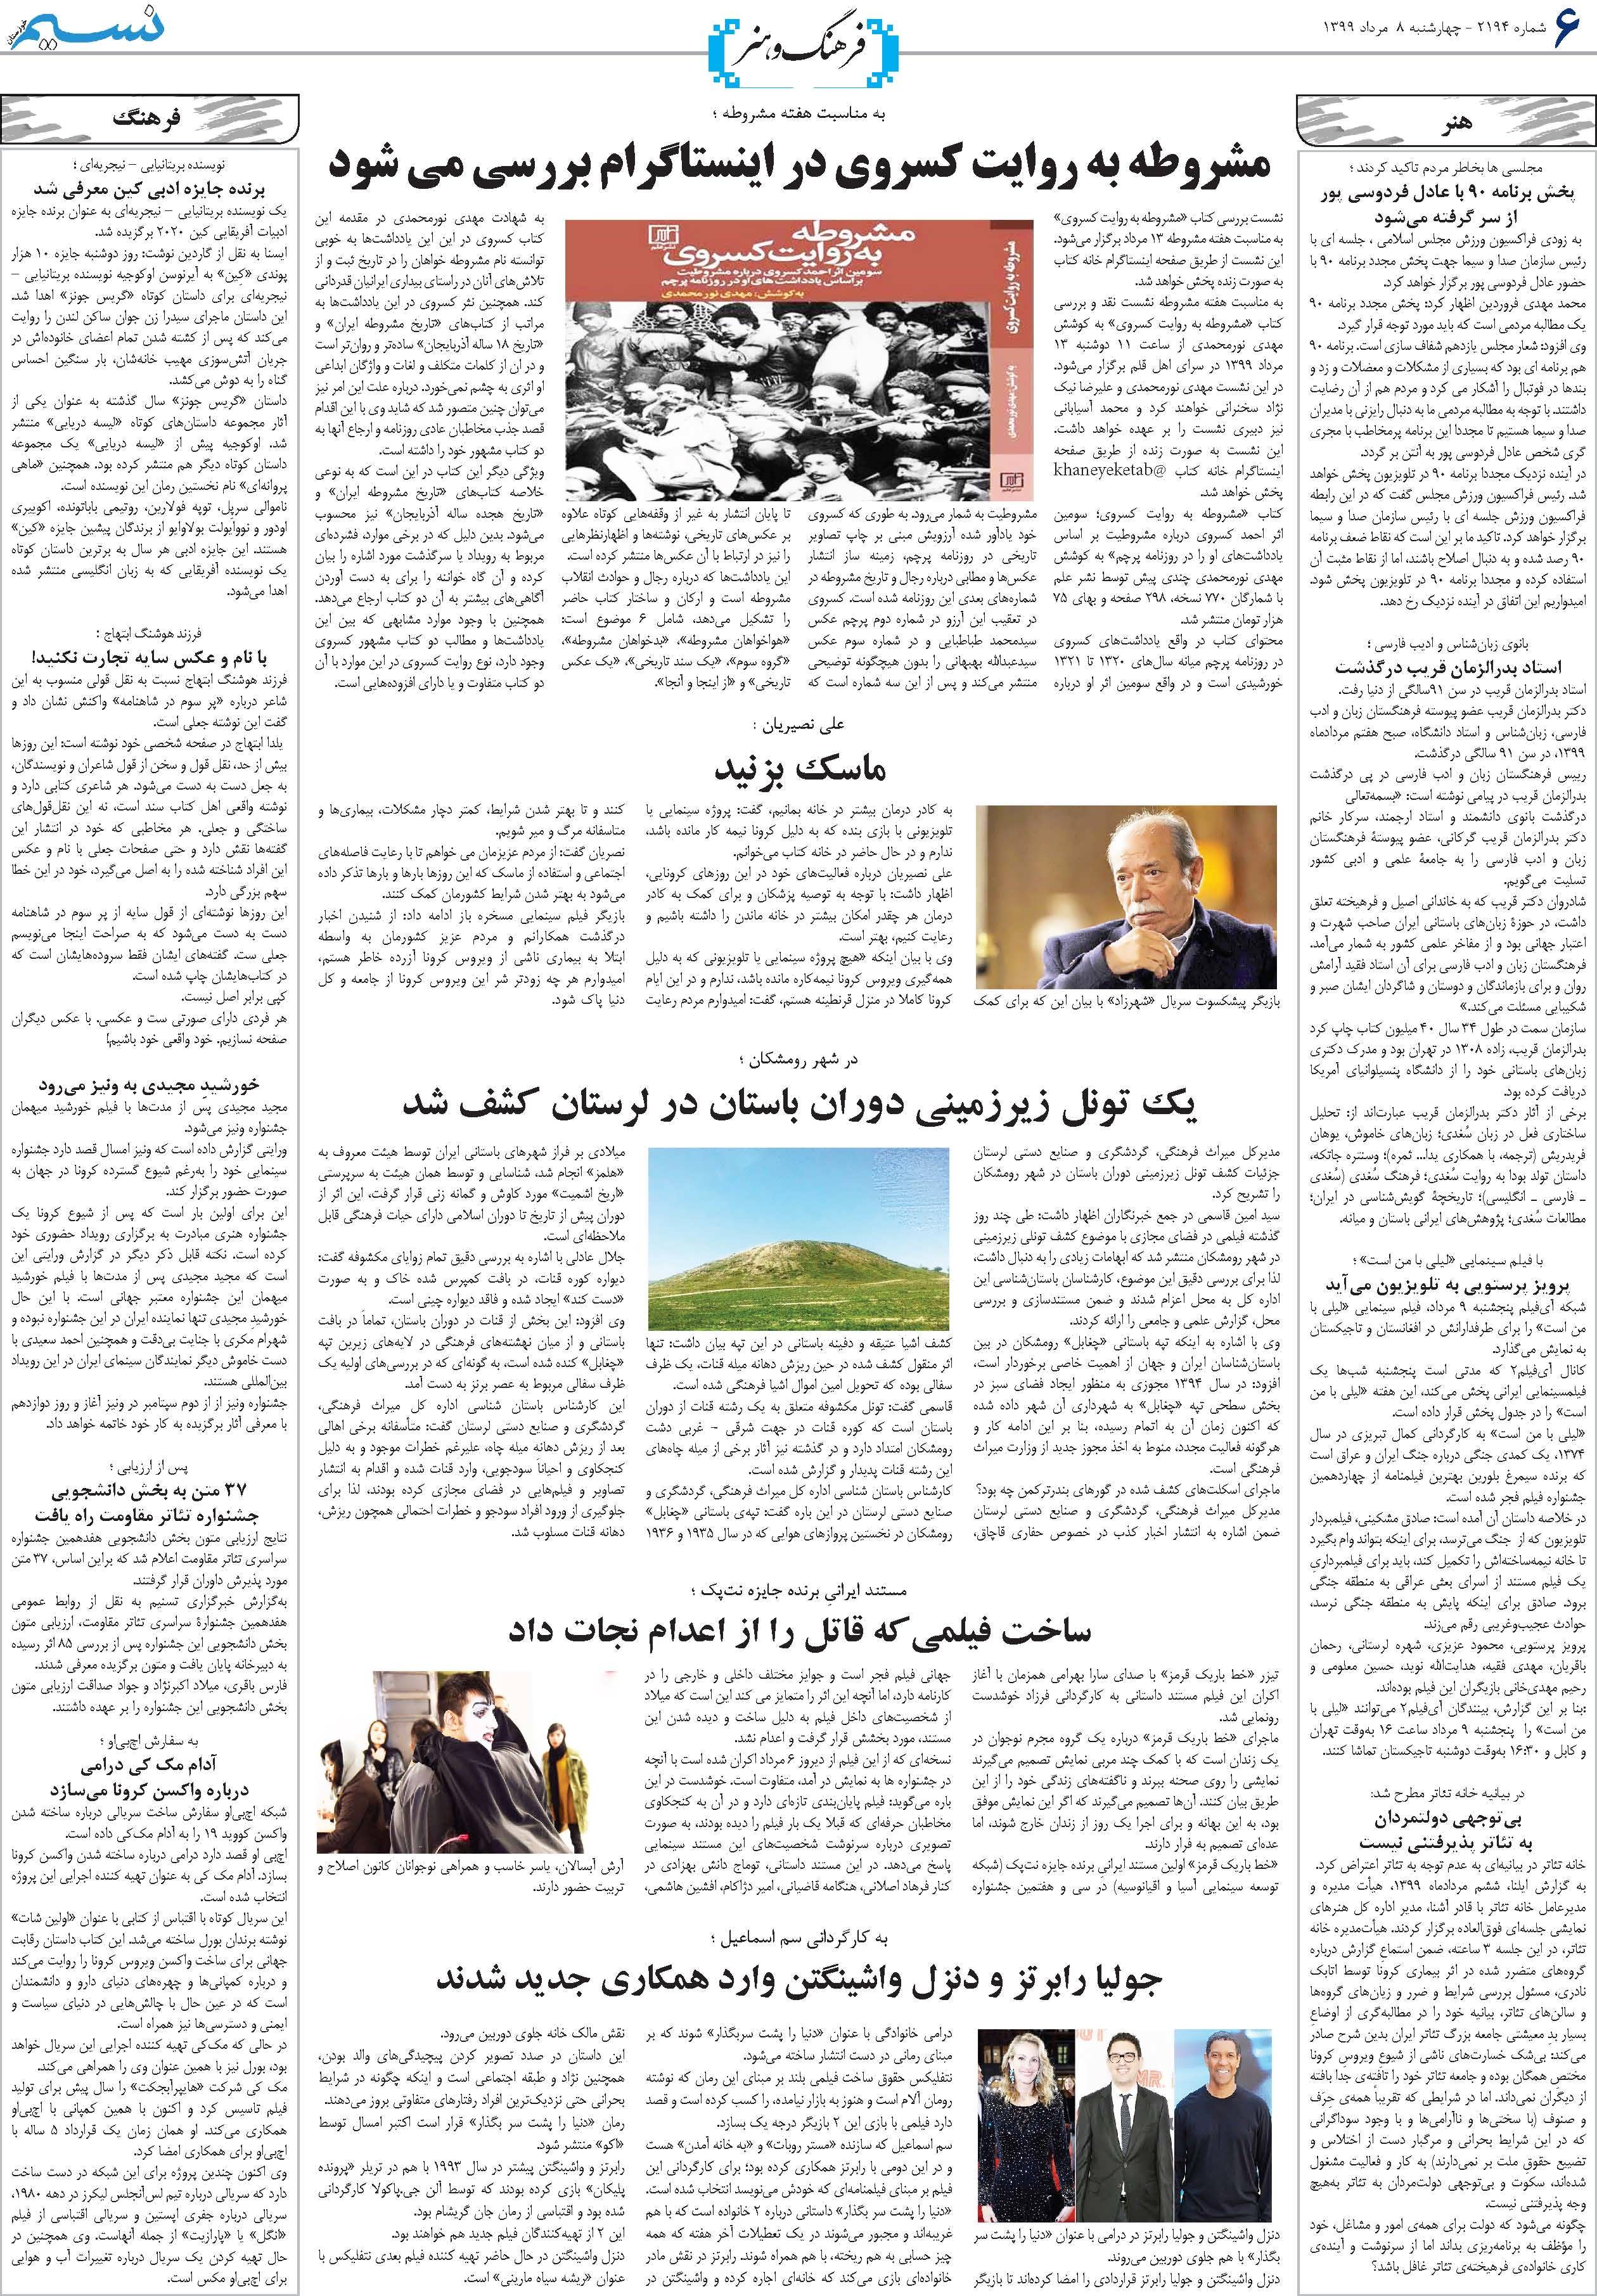 صفحه فرهنگ و هنر روزنامه نسیم شماره 2194